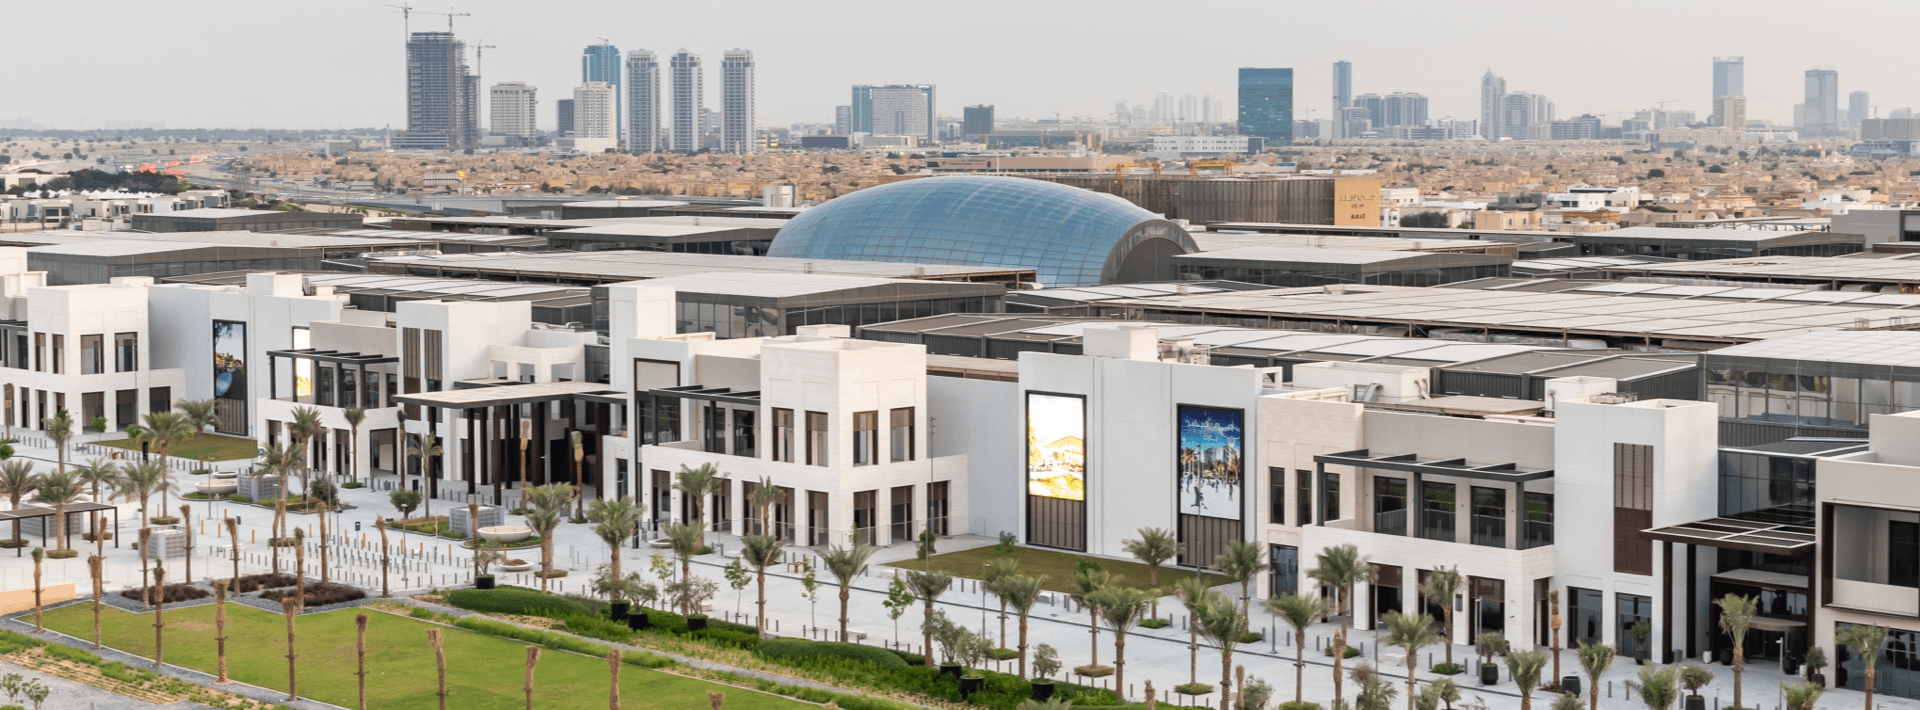 Dubai Hills Mall Is Open